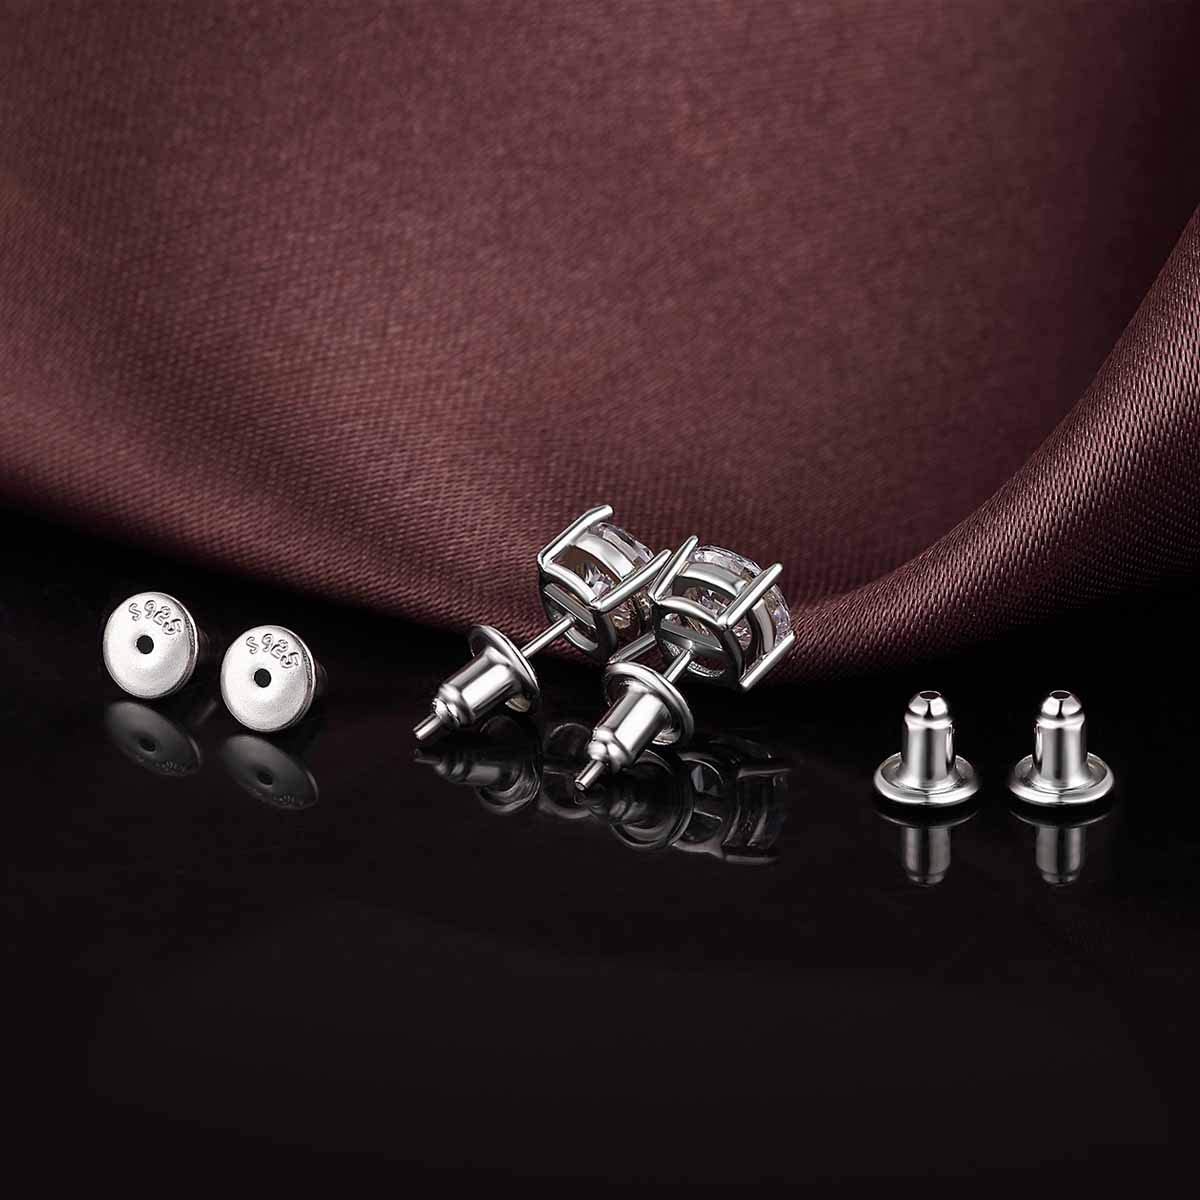 14K Gold Bullet Locking Earring Backs for Diamond Studs,925 Sterling Silver Hypoallergenic Replacements Backings for Pierced Earrings, Silver 5 Pairs